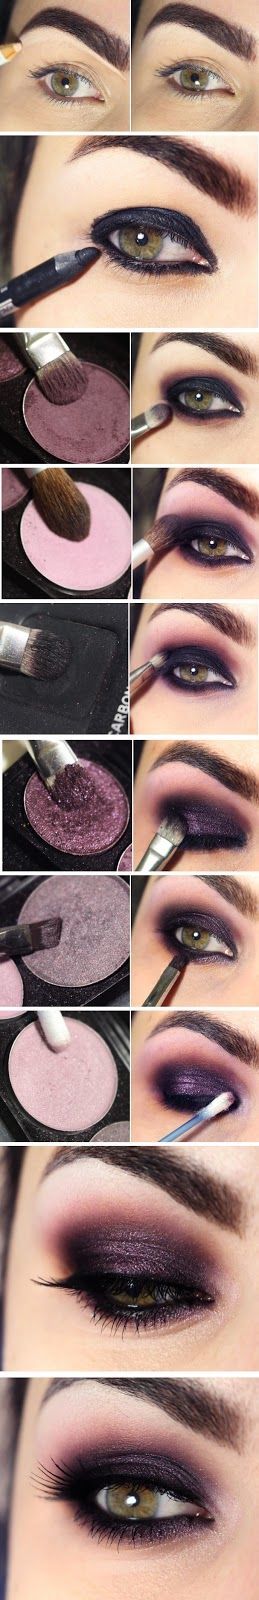 pink-and-gray-eye-makeup-tutorial-11_2 Roze en grijze oog make-up tutorial